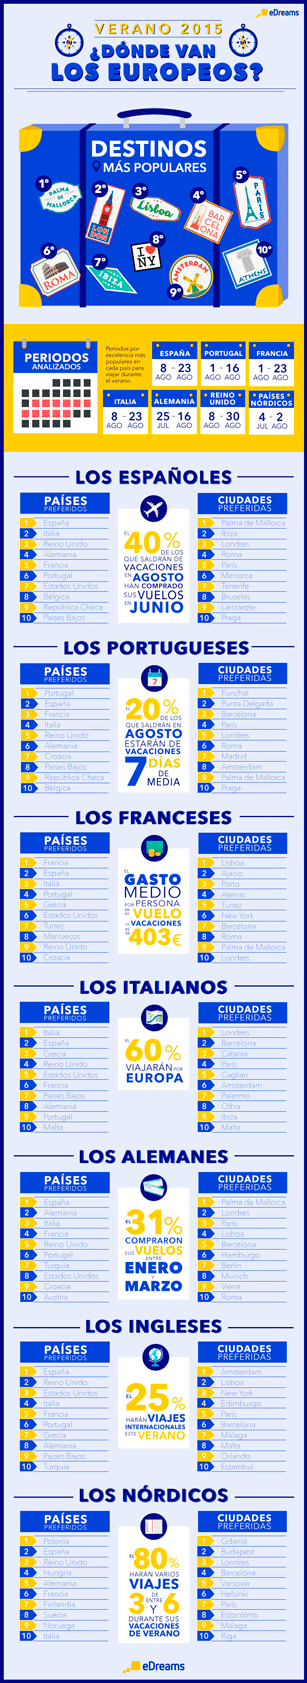 Profesionalhoreca-eDreams-DONDE-VAN-LOS-EUROPEOS-EN-VERANO-2015_infografia